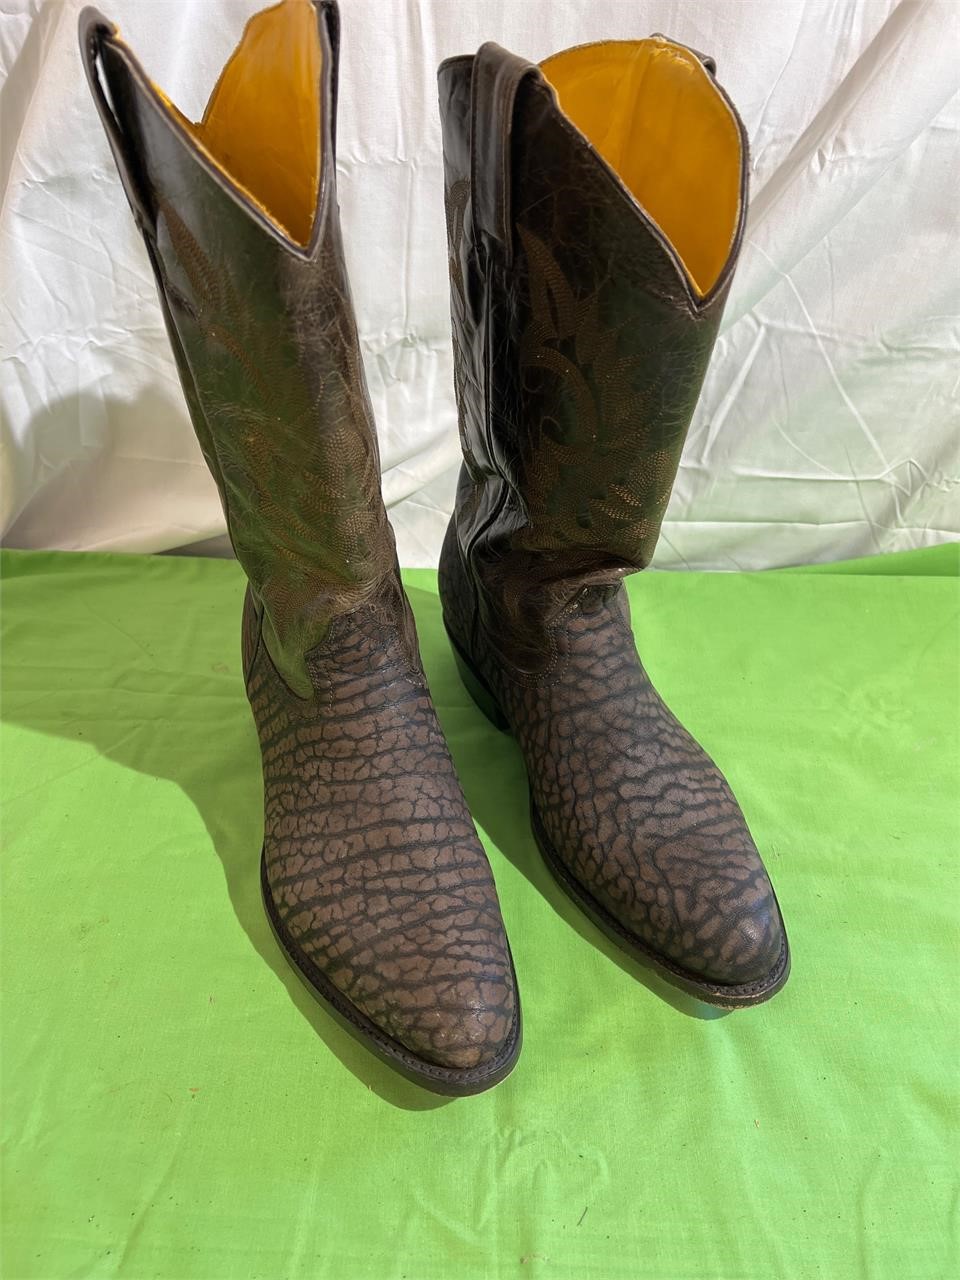 Junior cowboy boots size 10 1/2